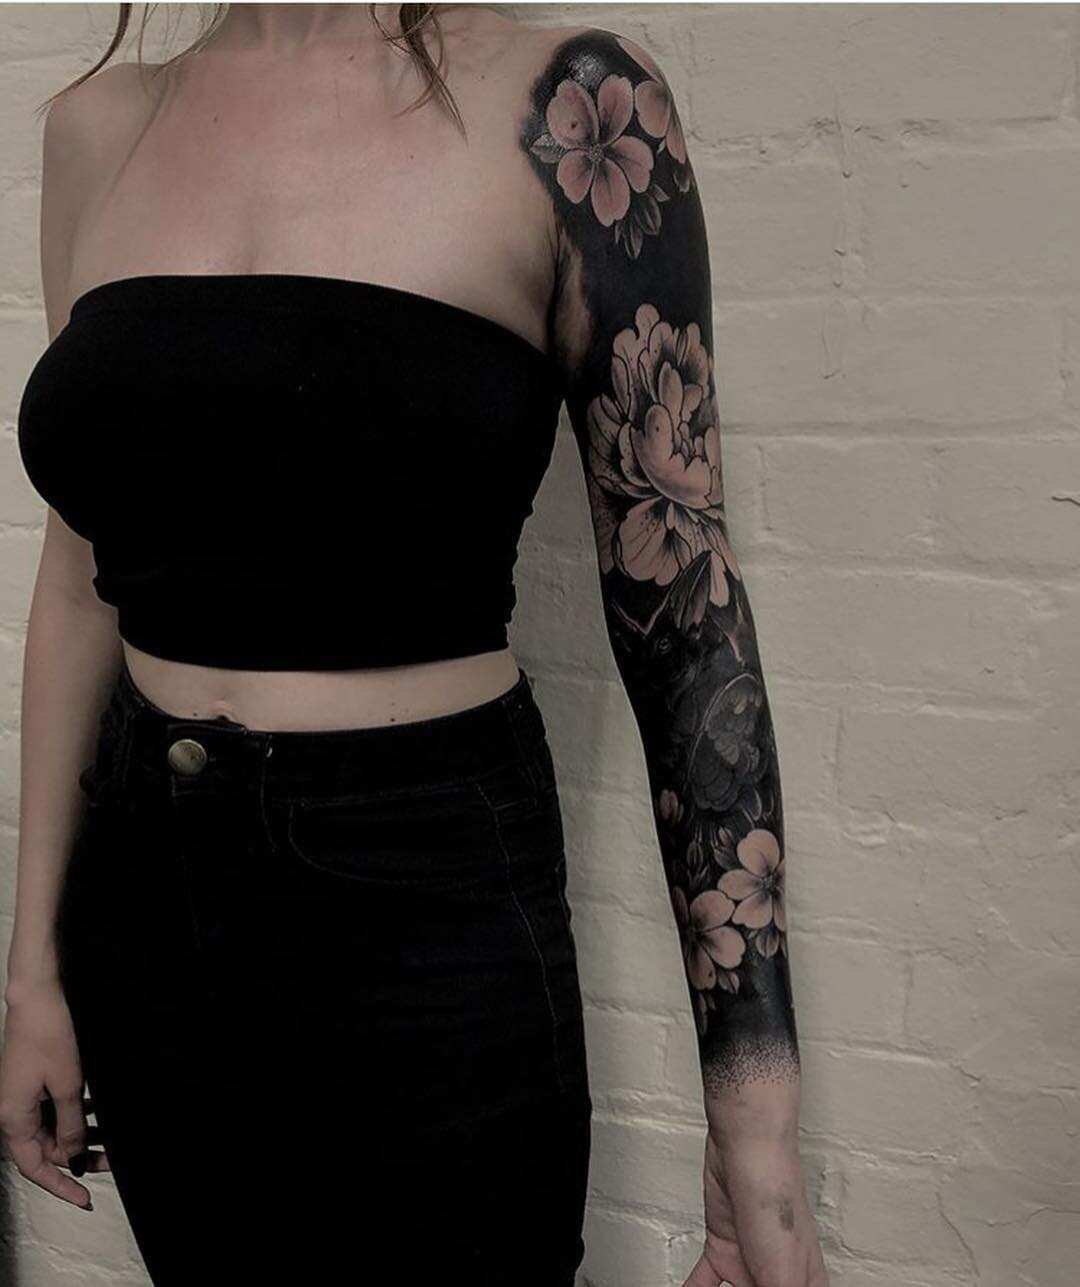 Blacked tattoo